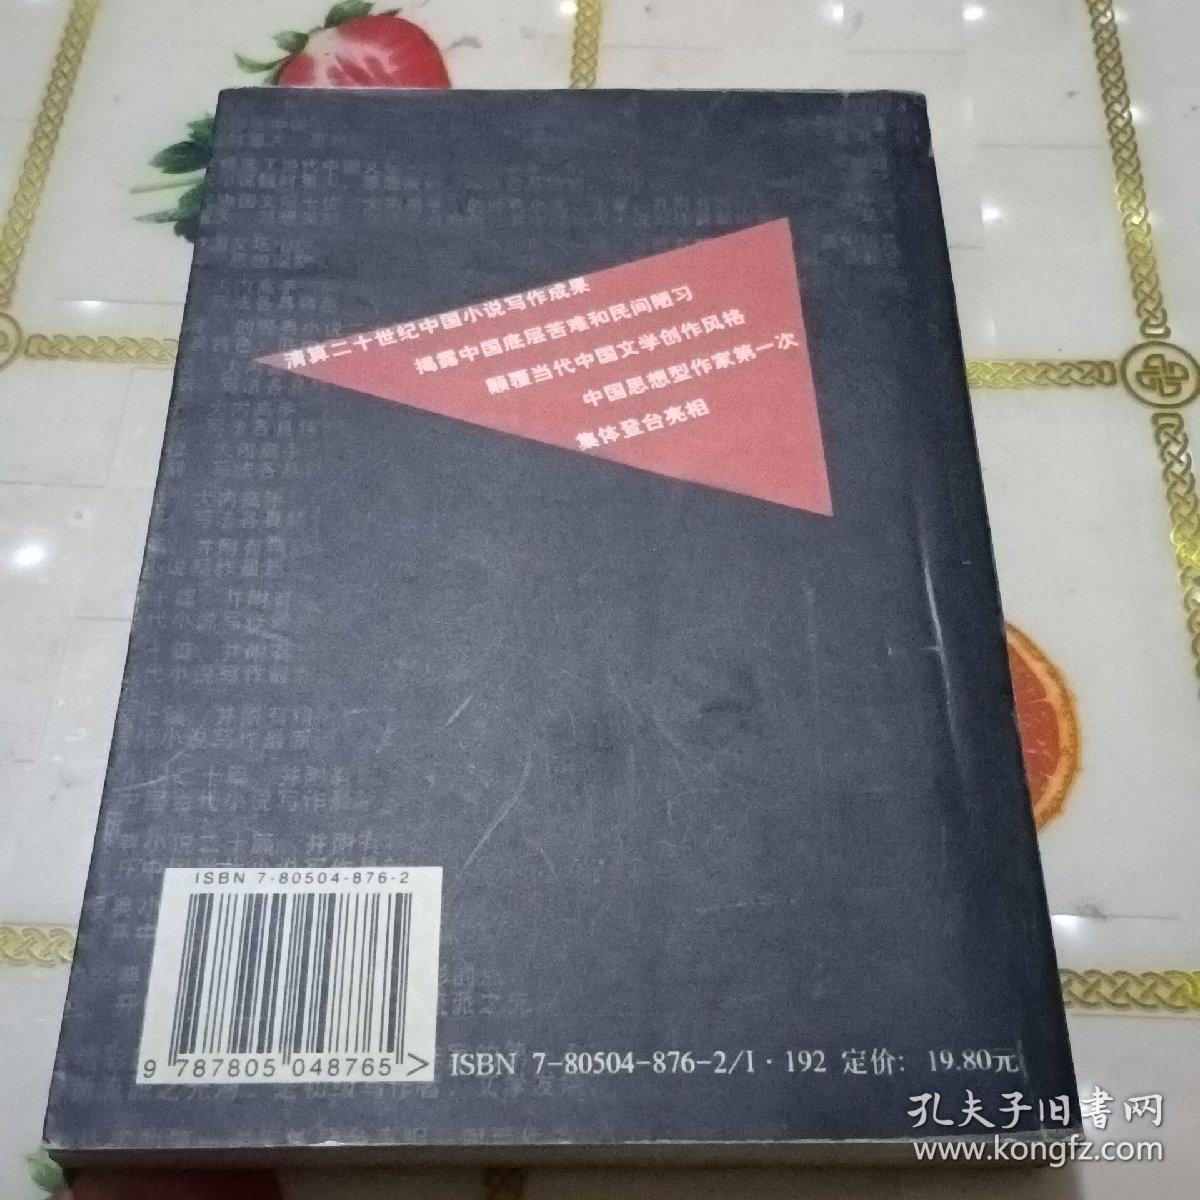 生命中不能承受之重:中国小说七剑客